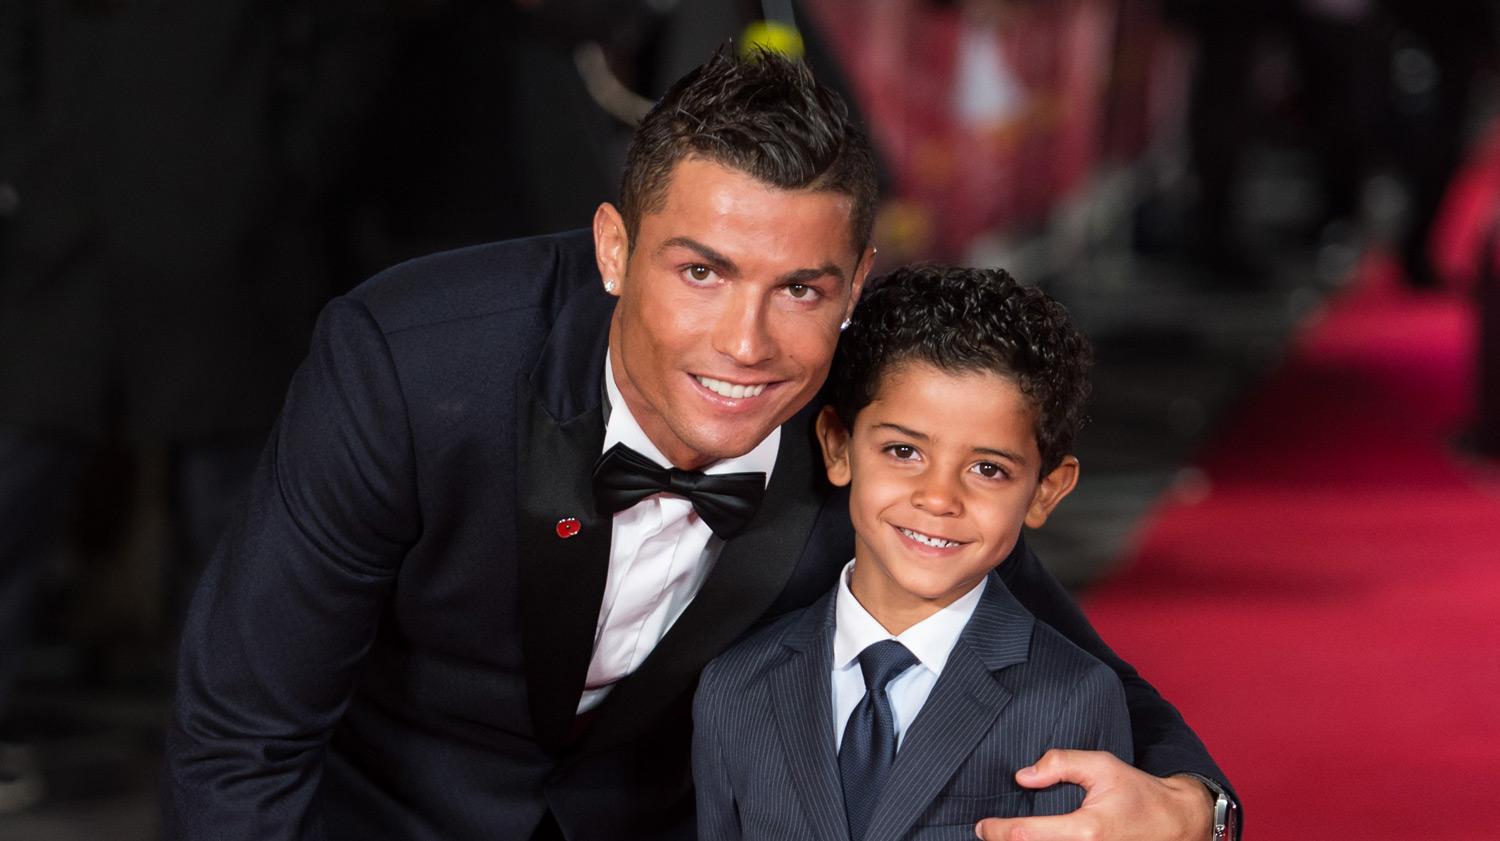 Kakav otac, takav sin: Ronaldo Junior pokazao svoje nogometno umijeće